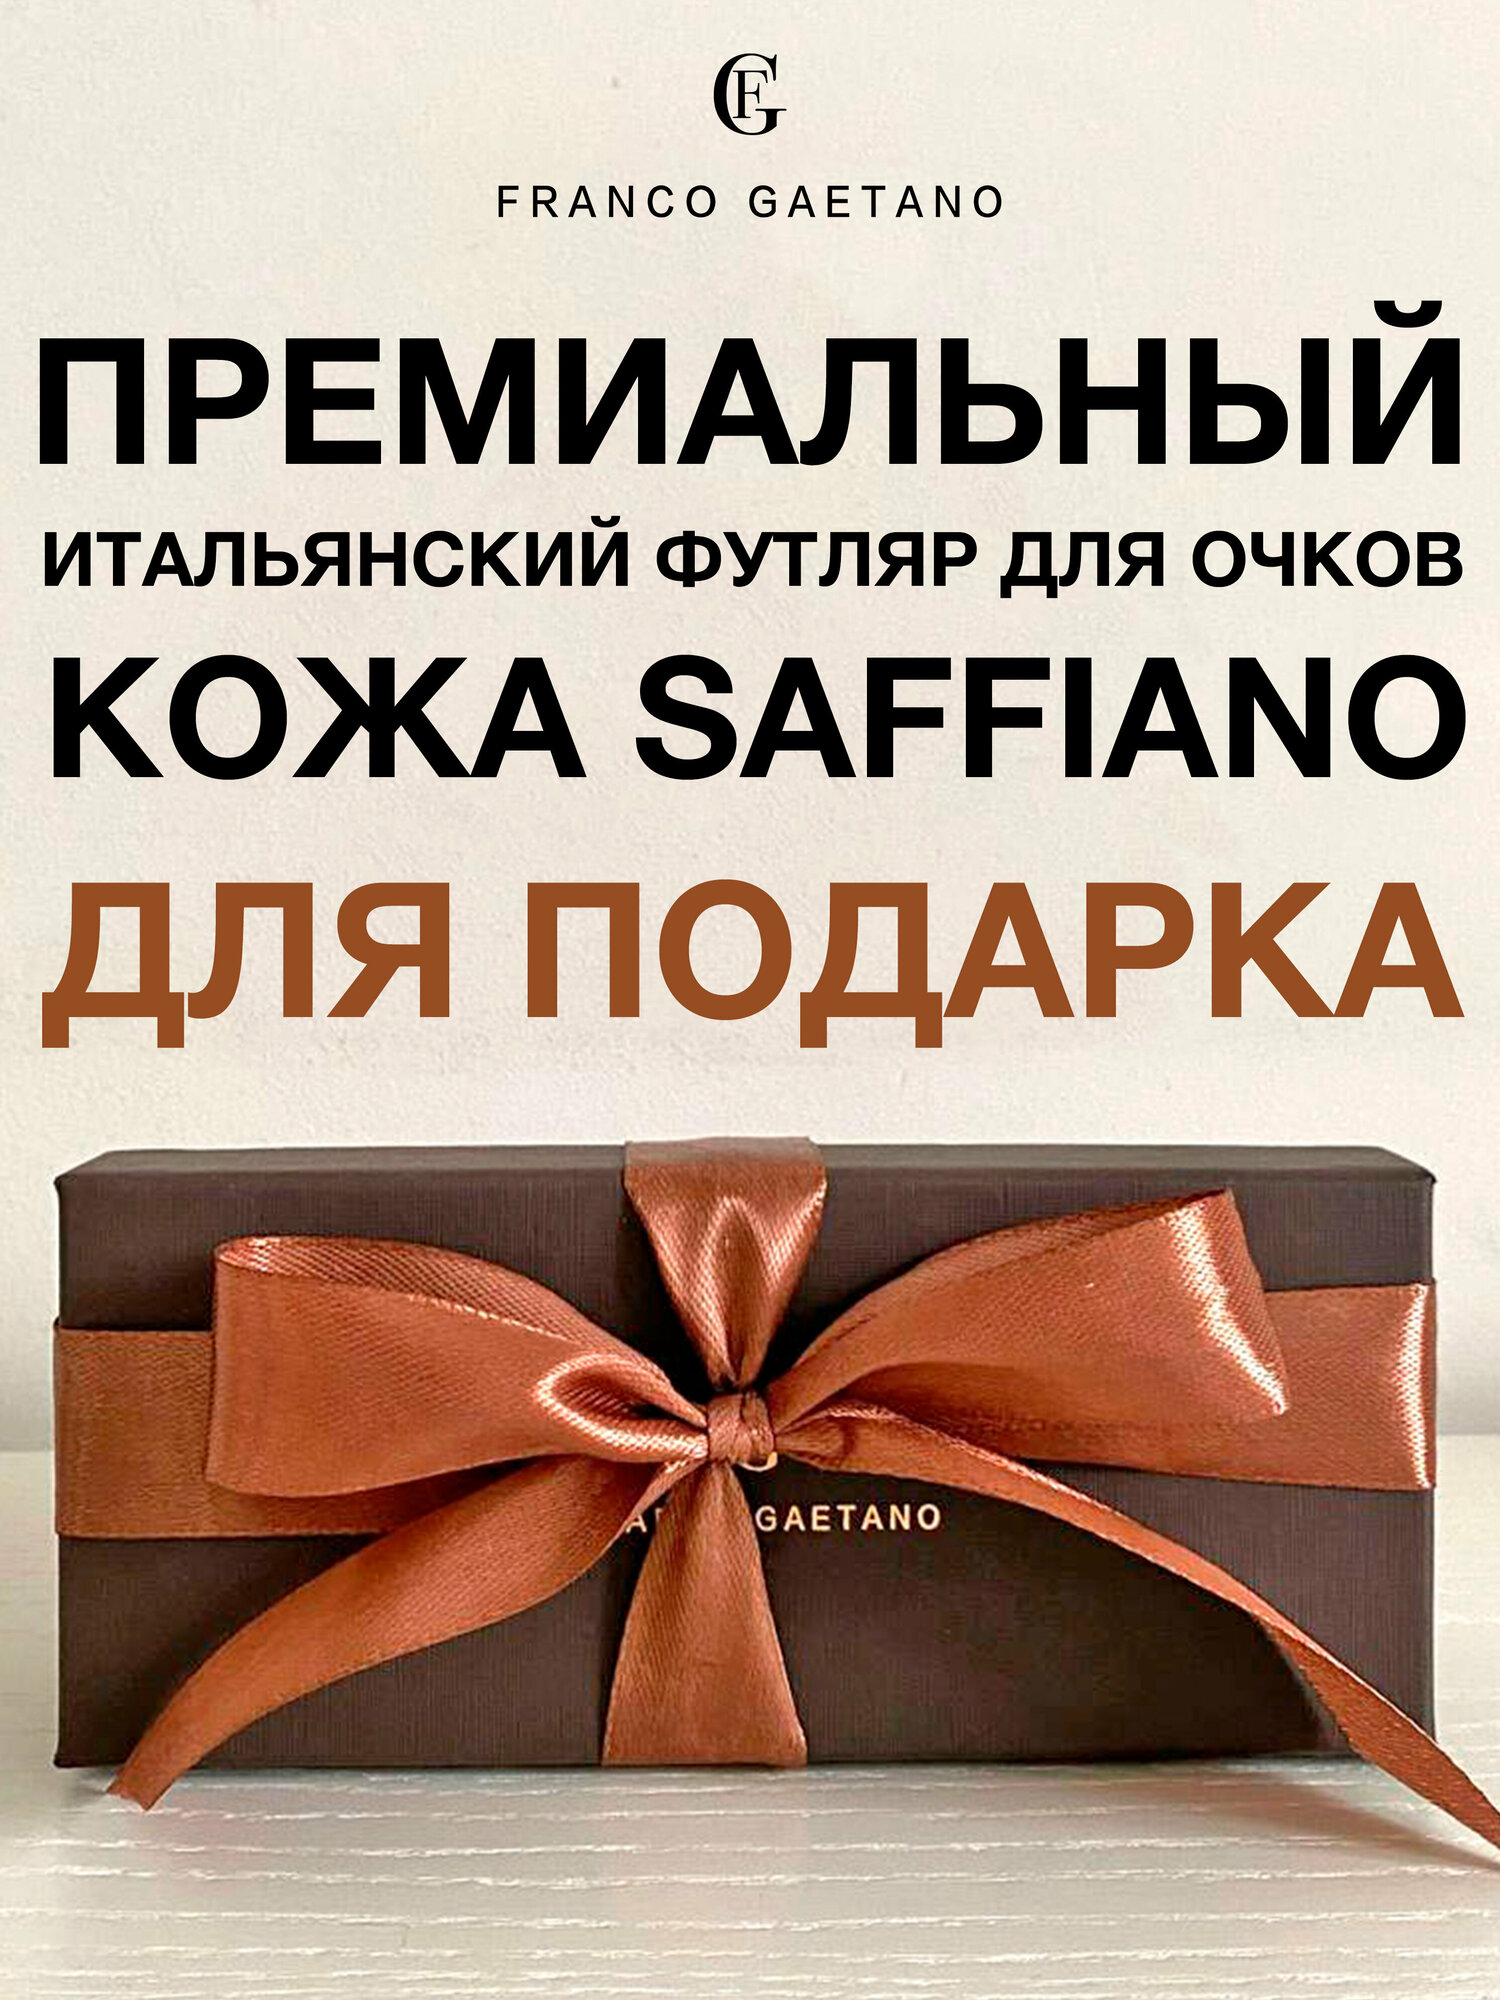 Футляр для очков FG для подарка премиальное качество, кожа Saffiano и бархат, мягкая салфетка из микрофибры и подарочная коробка, коричневая лента